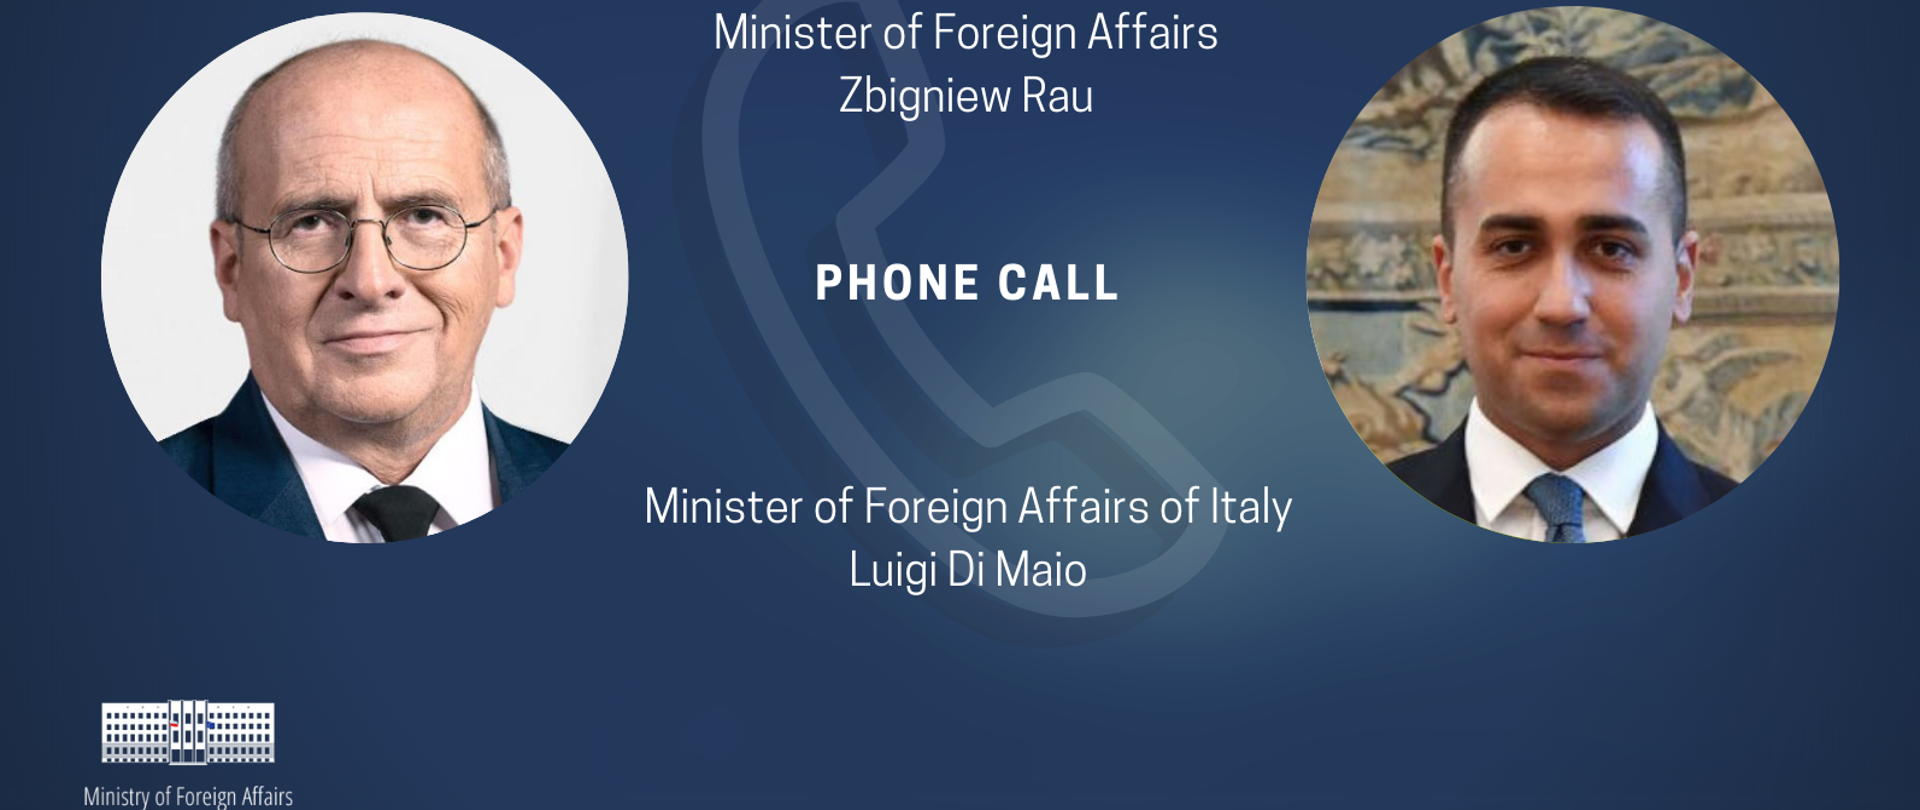 Minister Zbigniew Rau phone call Minister Luigi Di Maio